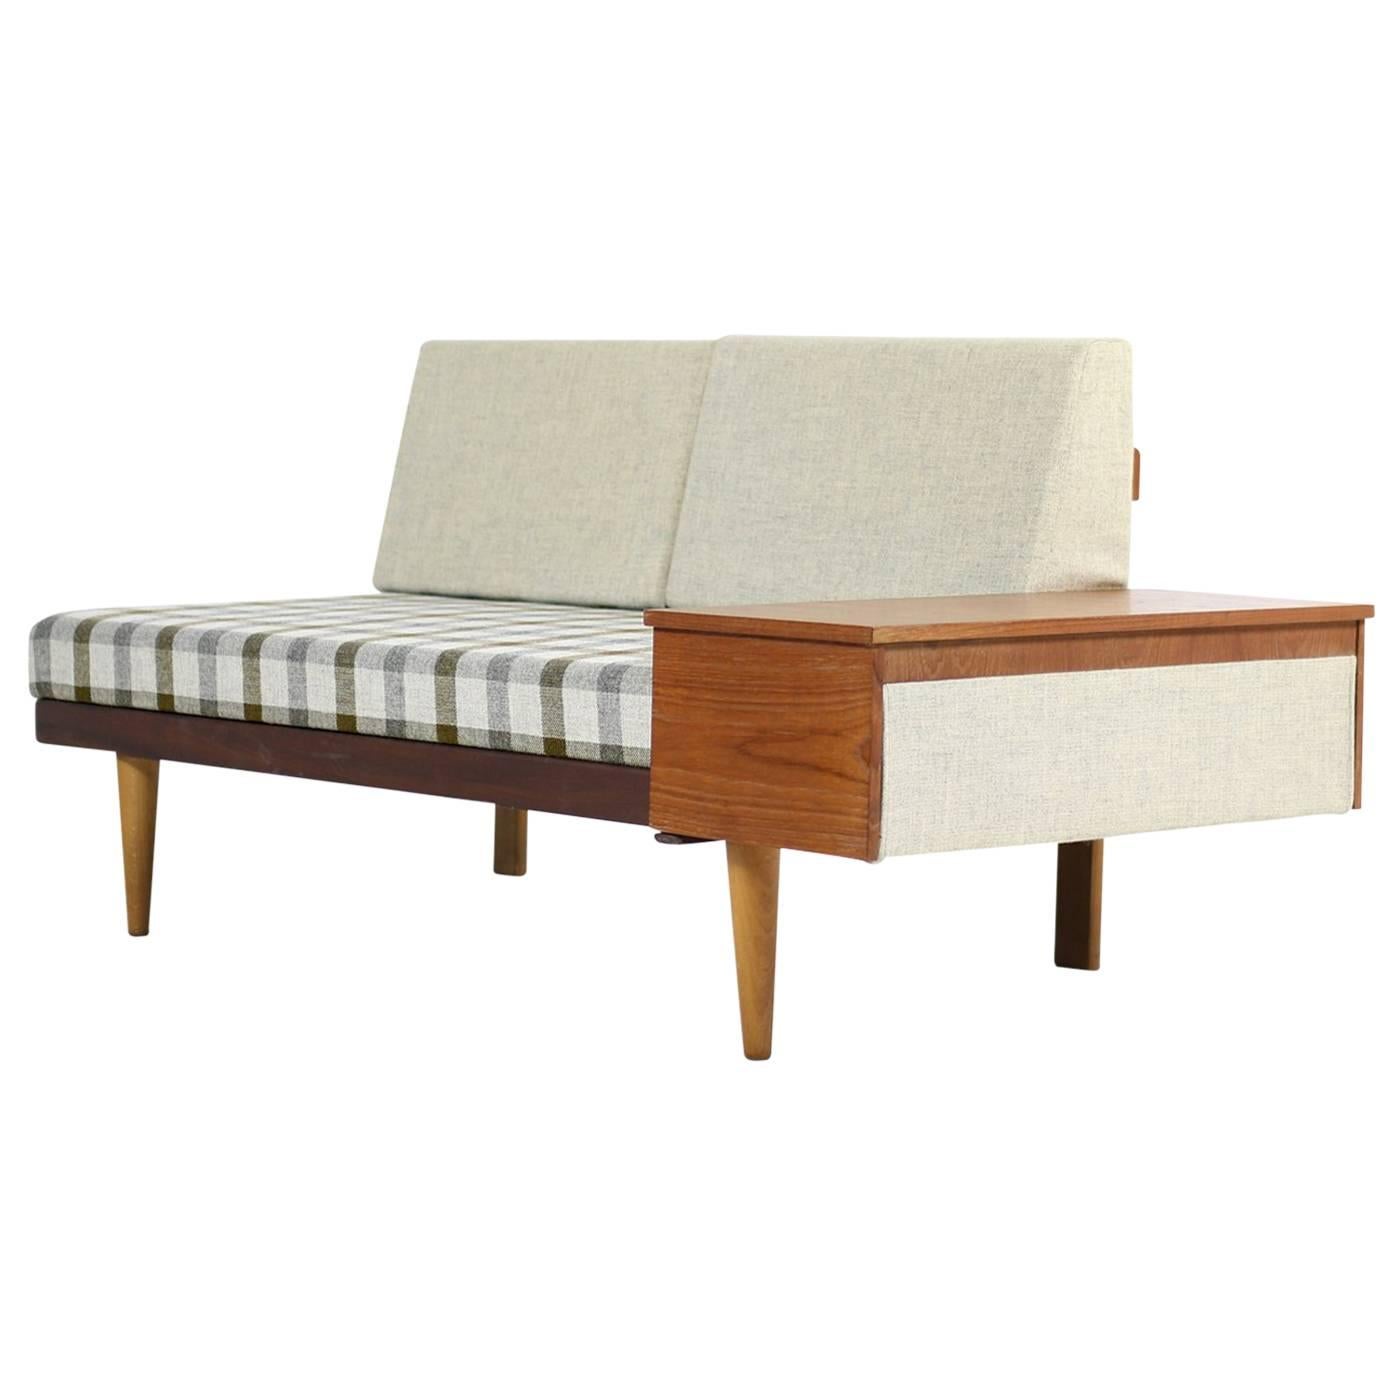 1950s Norwegian Teak & Beechwood Extendable Daybed Svane Møbler Norway Sofa #2